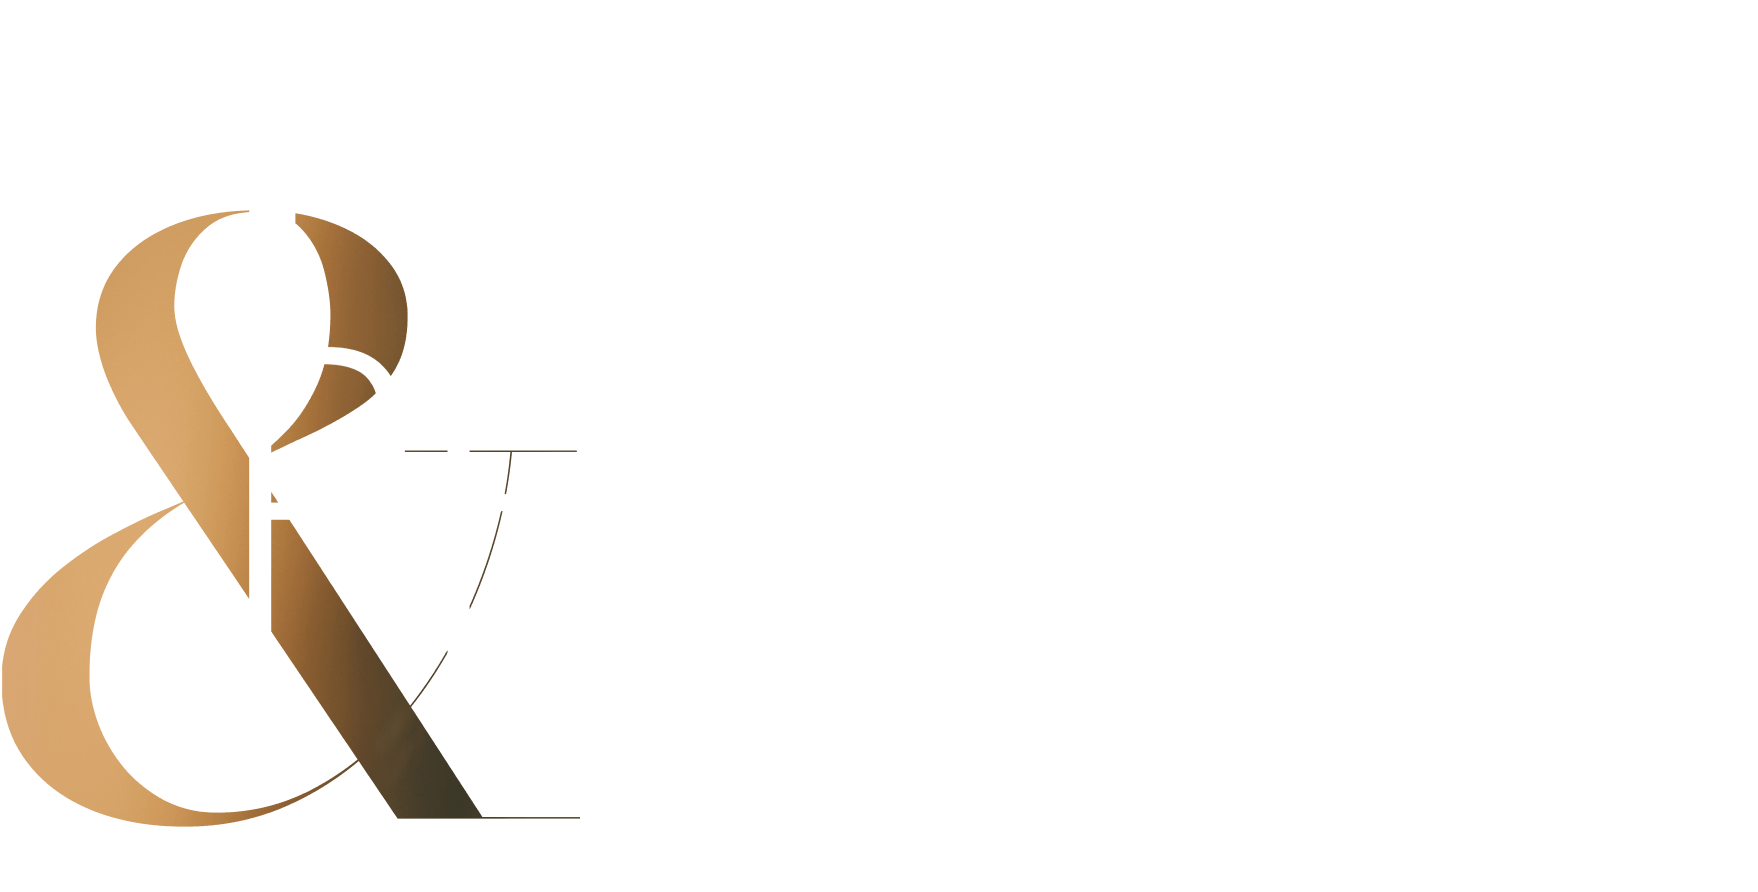 Passion & Precision graphic